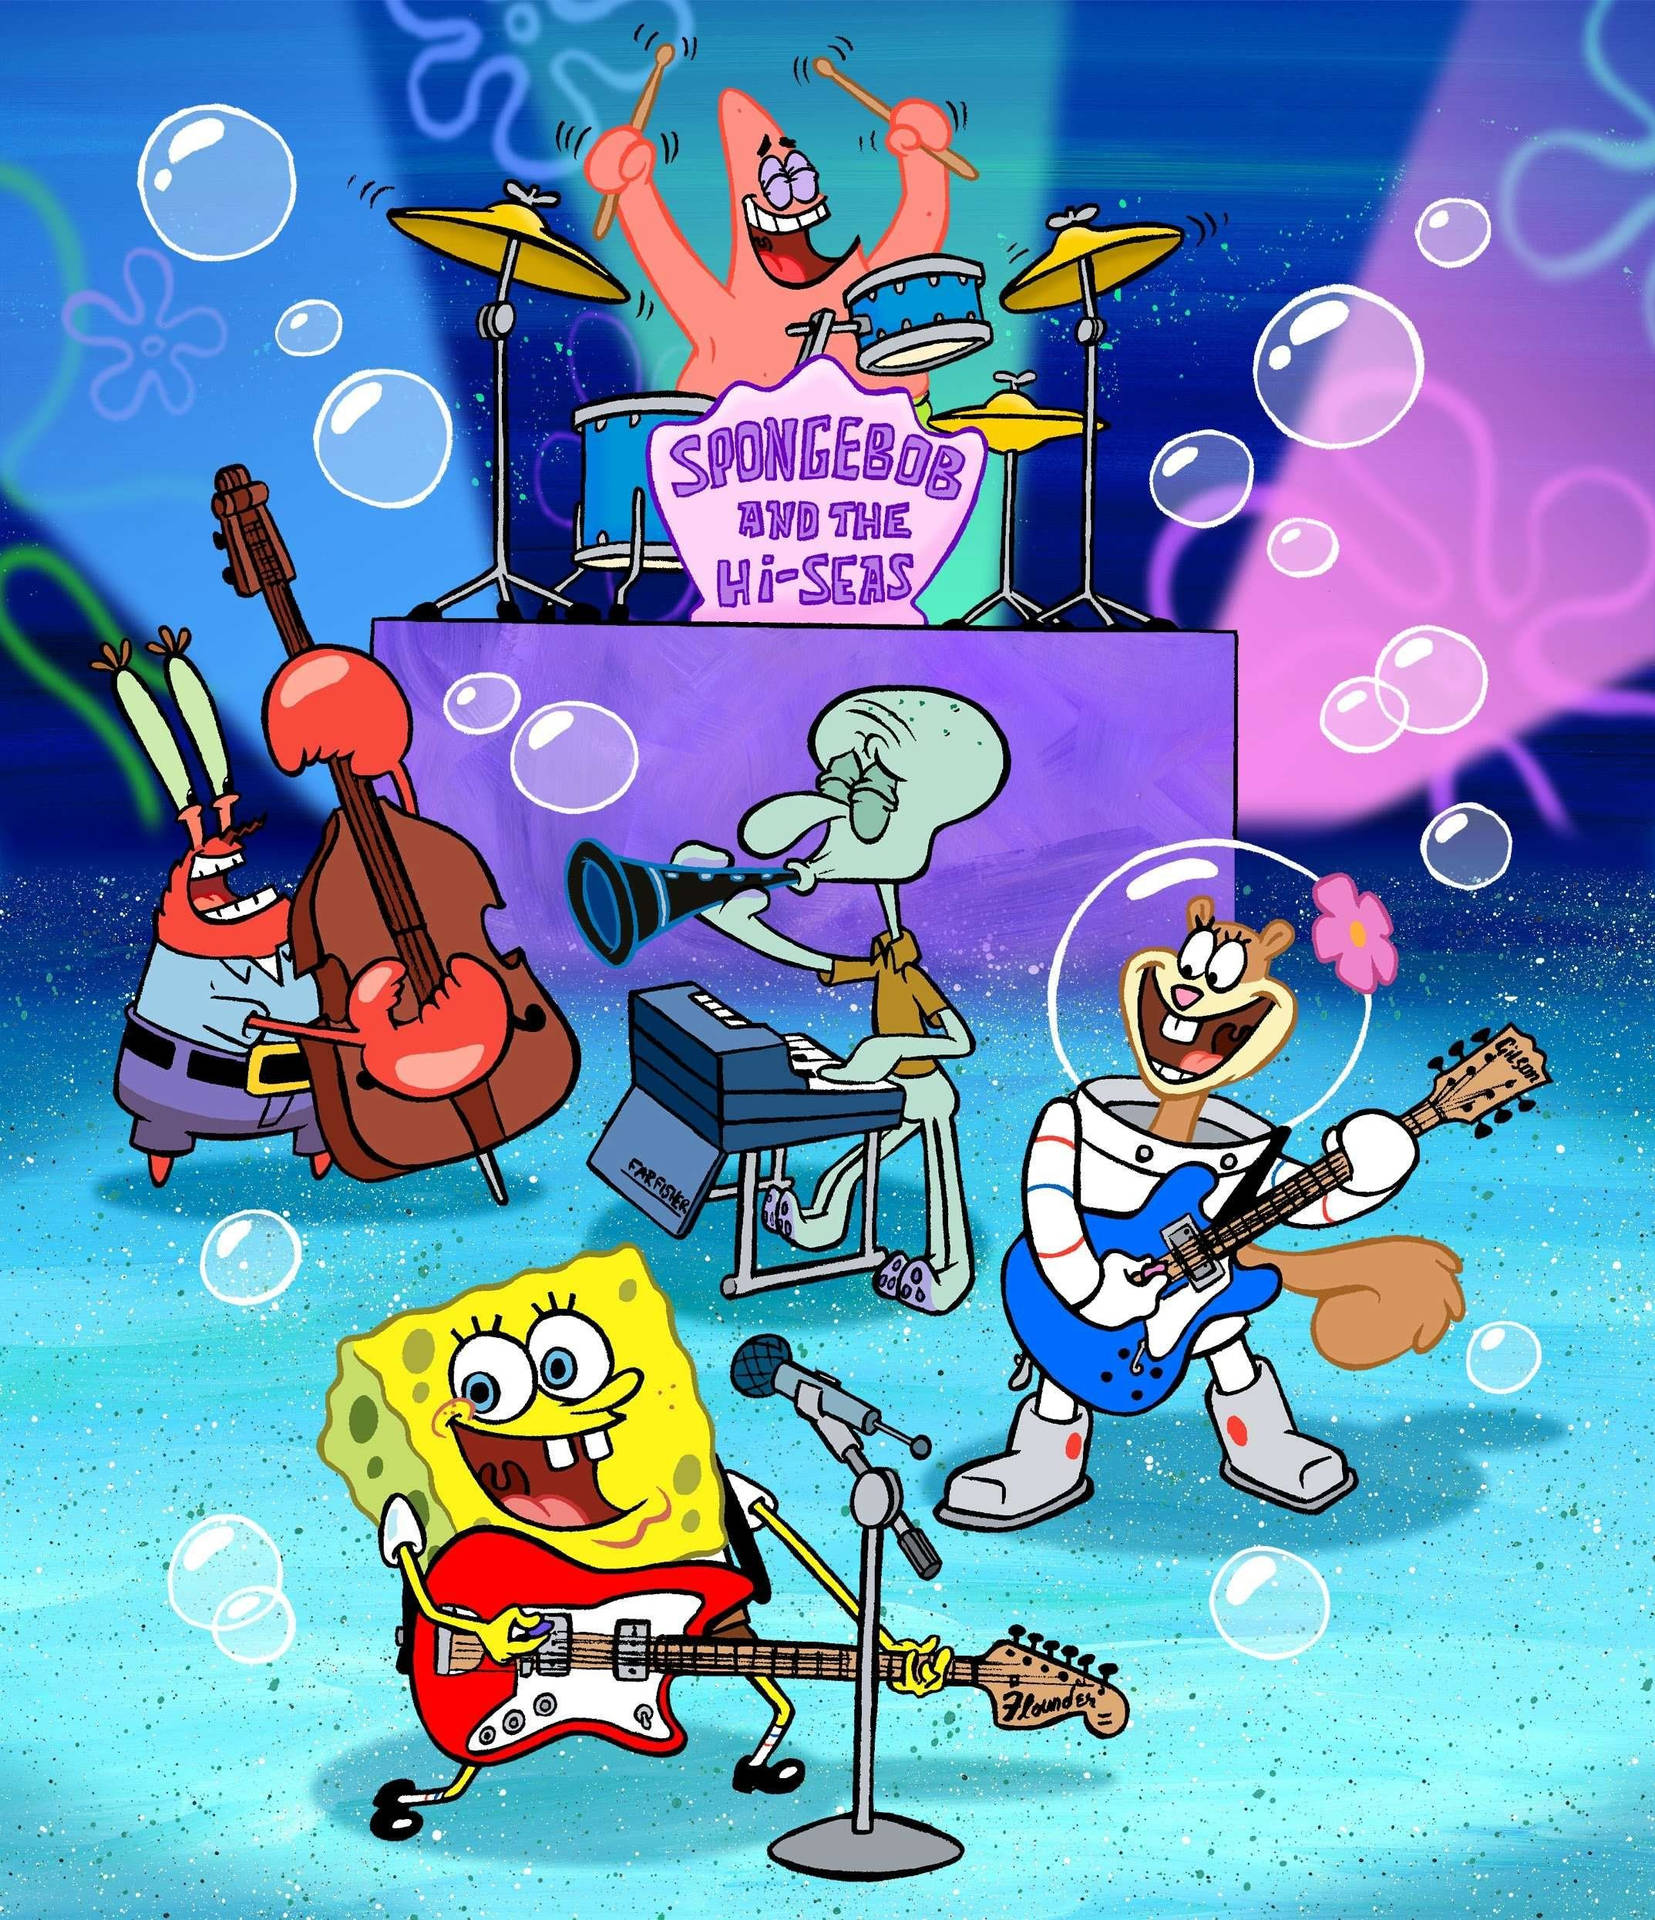 Cute Spongebob Hi-seas Concert Wallpaper